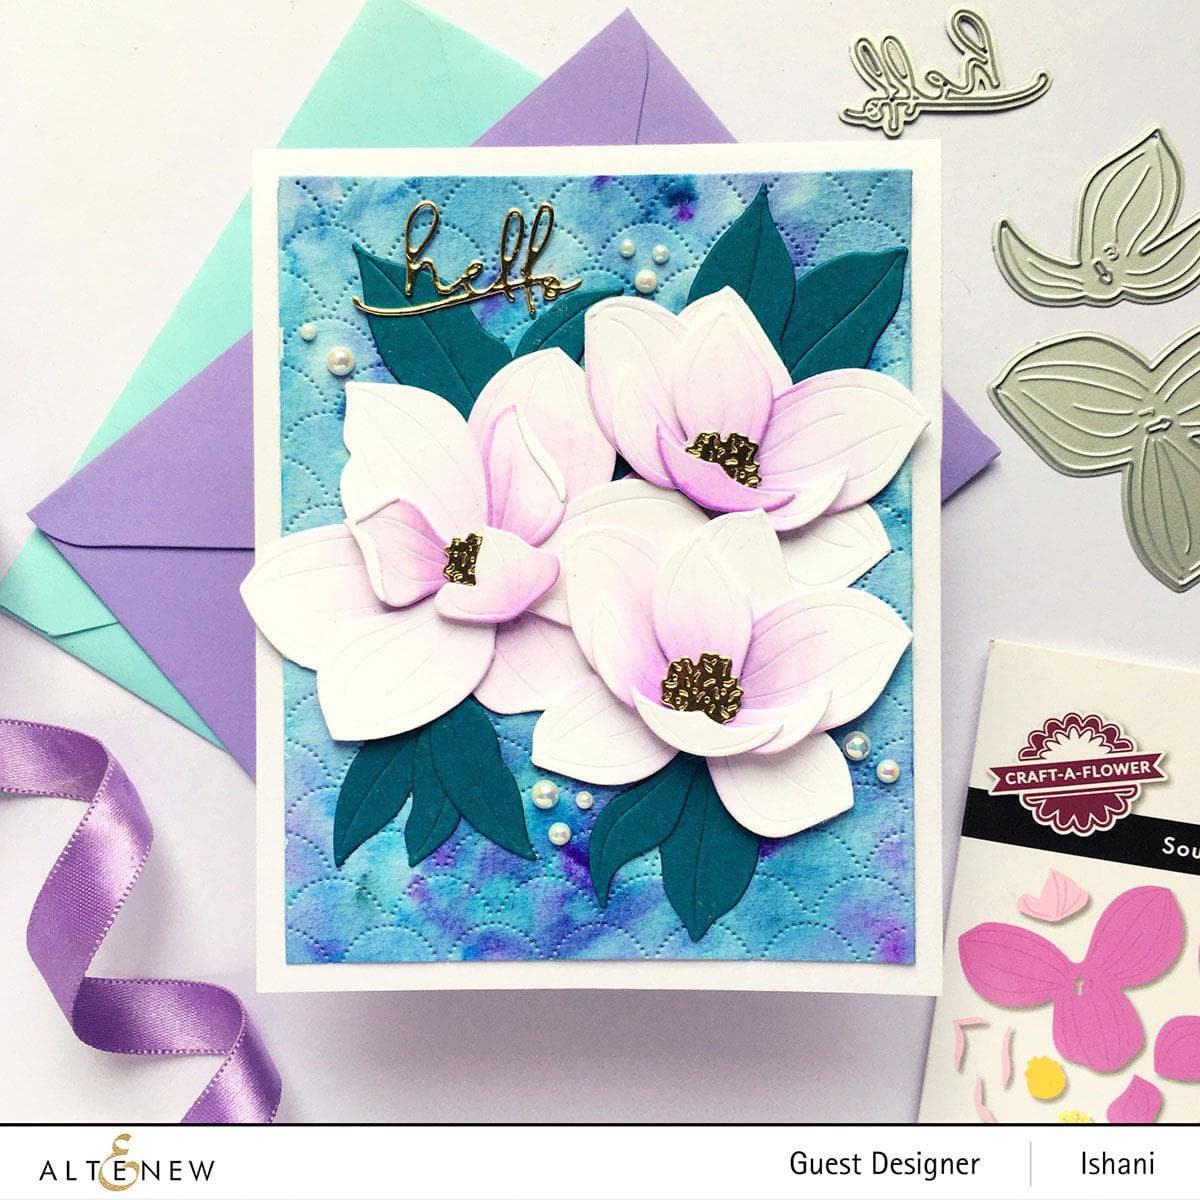 Altenew Craft-A-Flower: Southern Magnolia Die Set